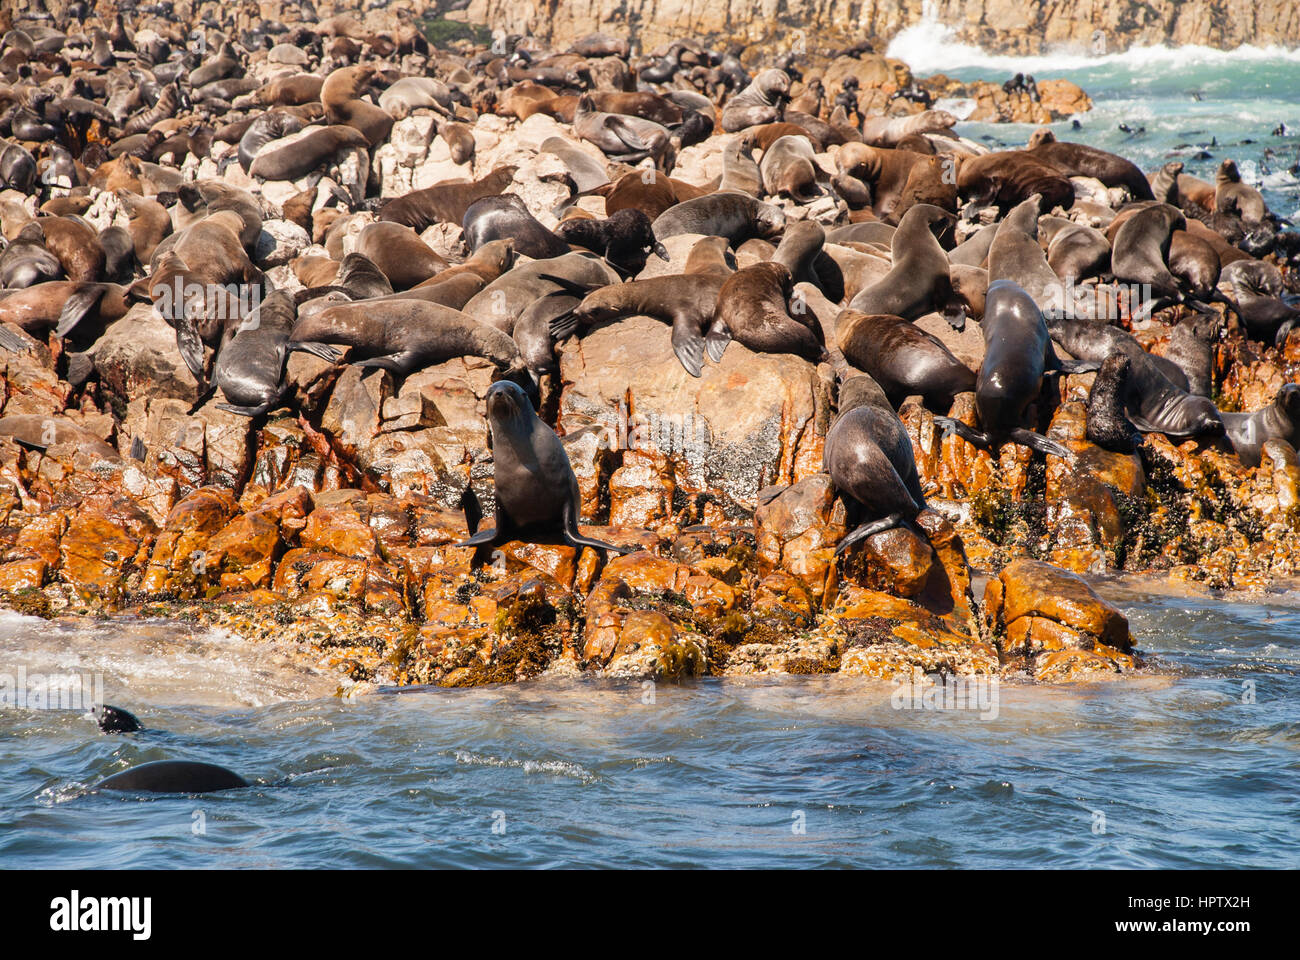 Colonie de phoques à fourrure du Cap en Afrique du Sud Mossel Bay Banque D'Images